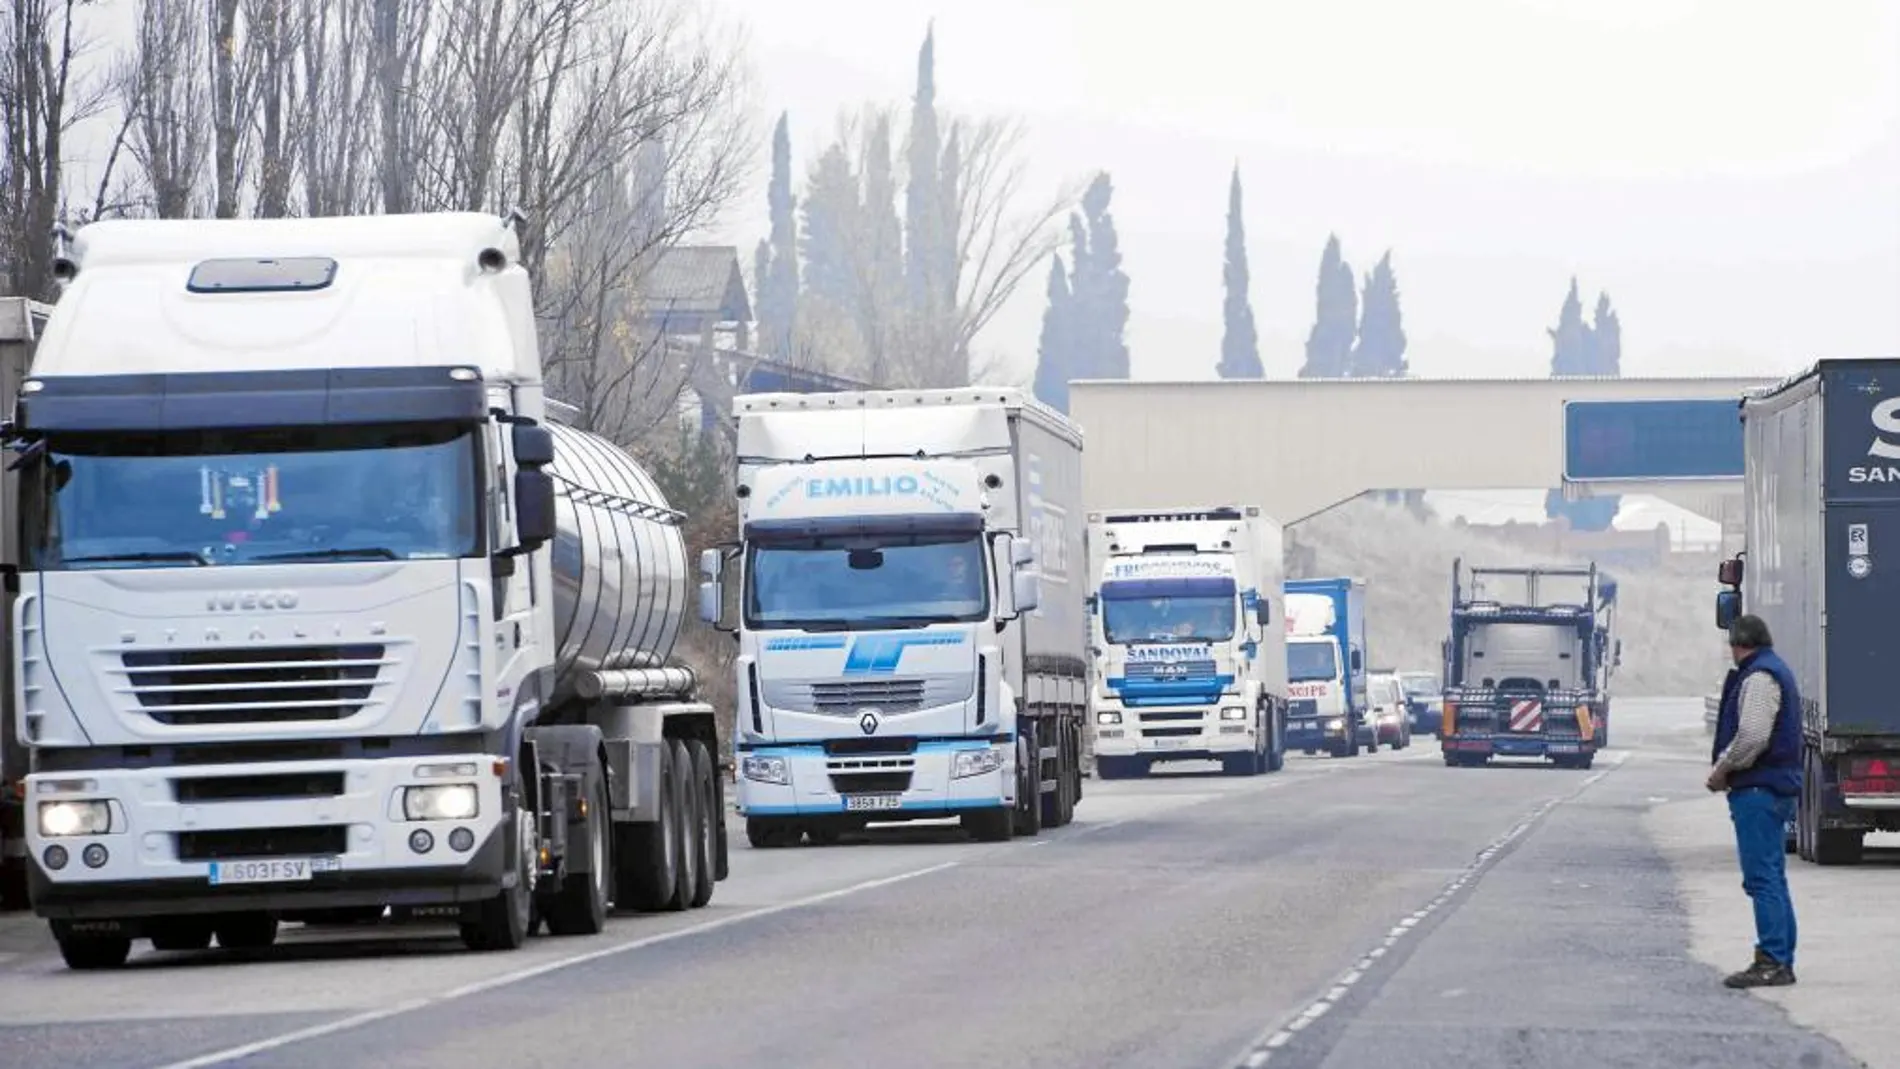 Cada vez está siendo mayor el alto número de empresas de transporte de mercancías y viajeros que circulan por Castilla y León sin la autorización correspondiente